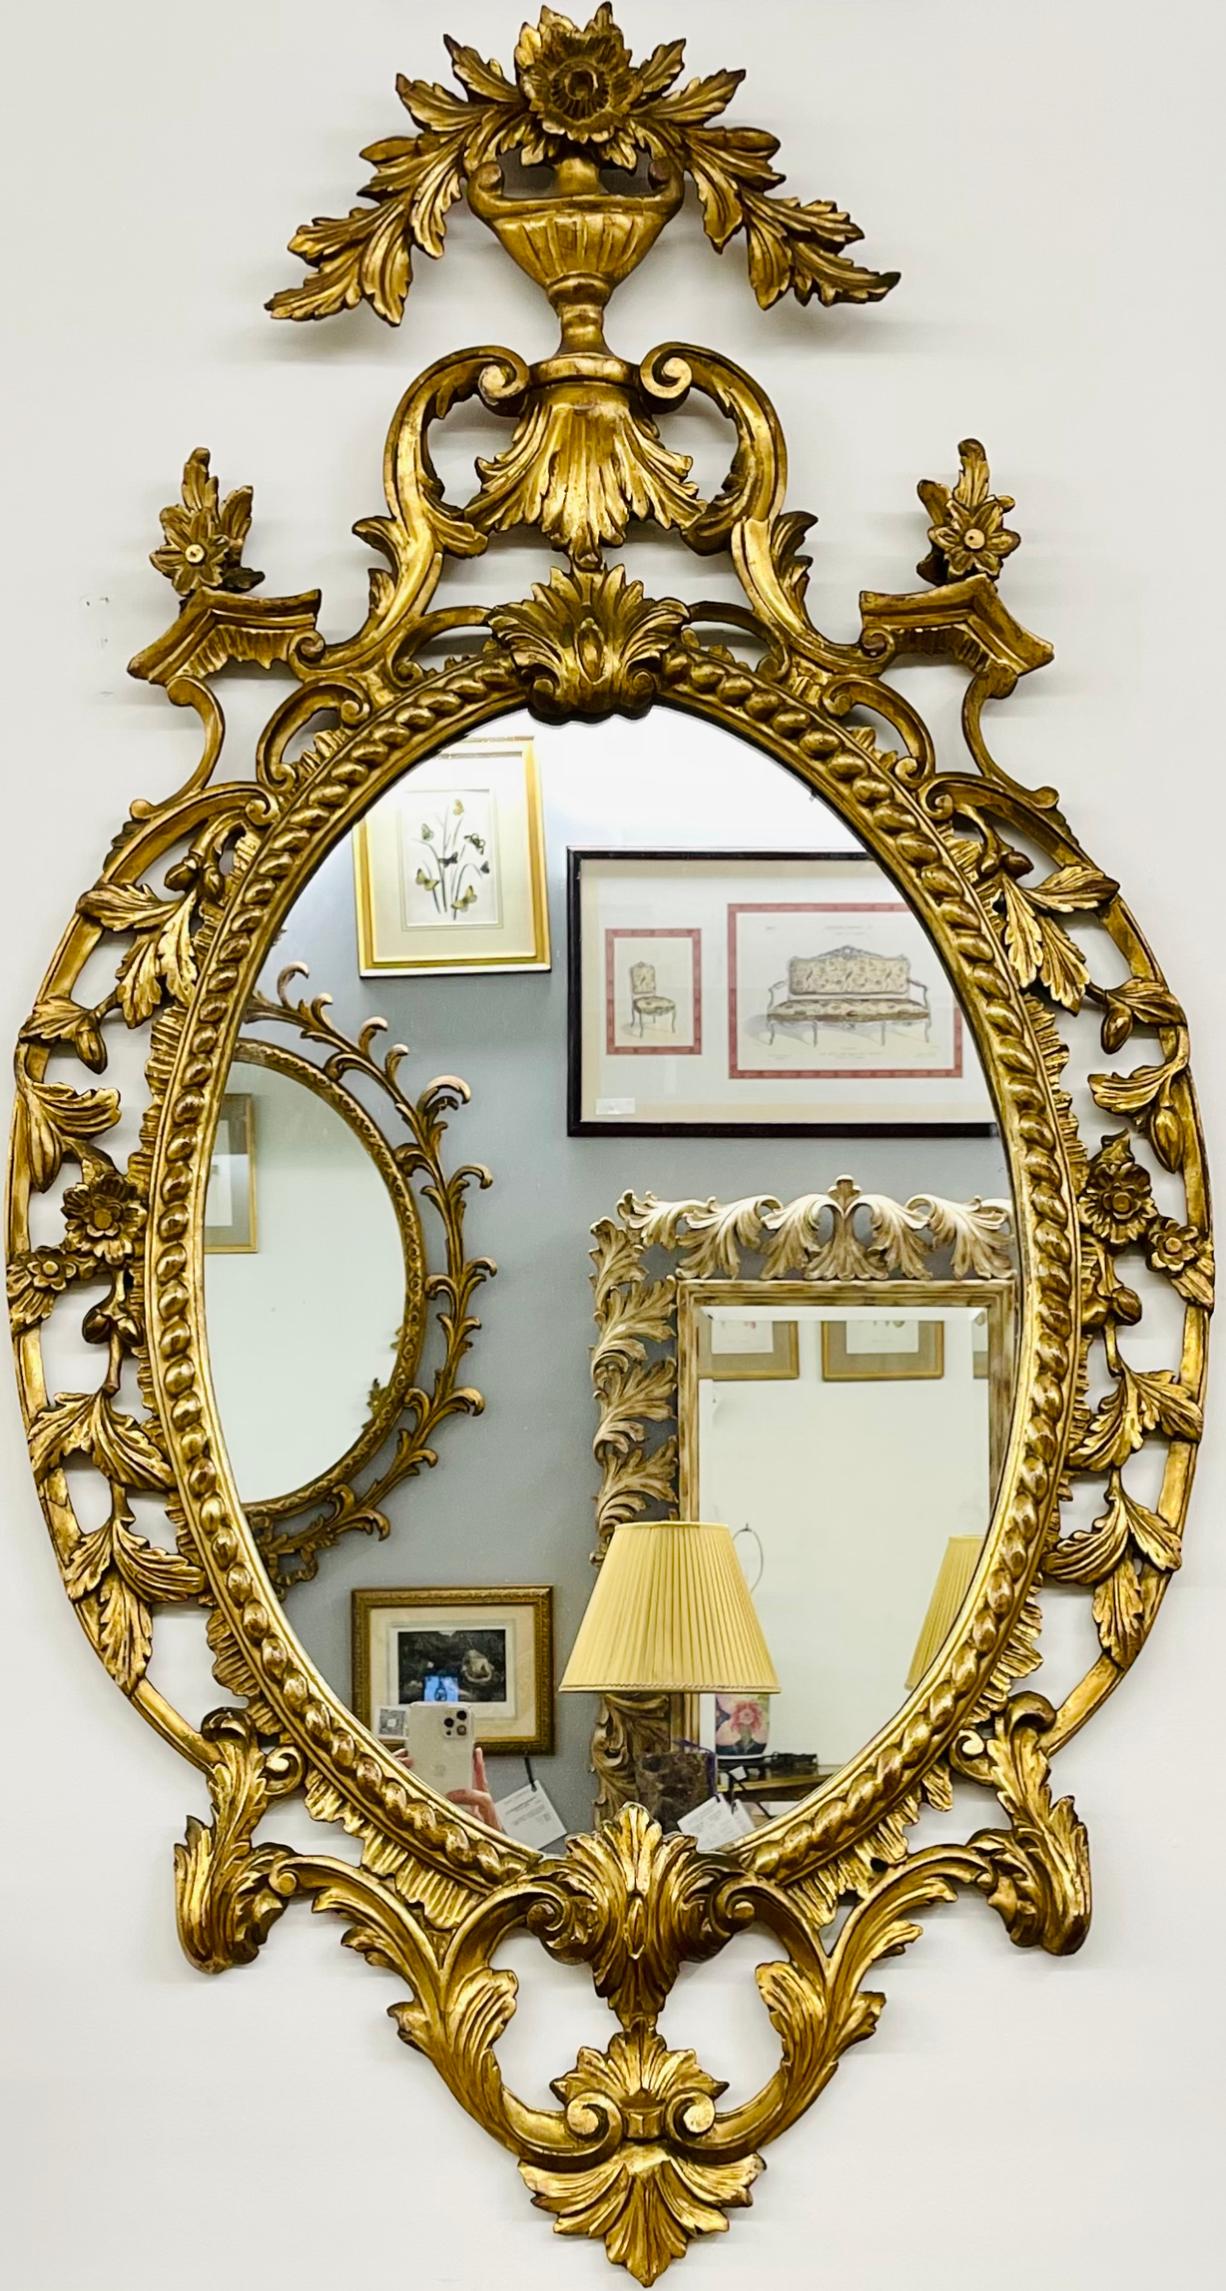 Paire de miroirs en bois doré. Chaque miroir mural ou console présente un miroir central transparent flanqué d'un cadre en bois sculpté et doré, orné de coquillages, de fleurs et d'un motif de volutes. Cette paire de miroirs muraux italiens finement